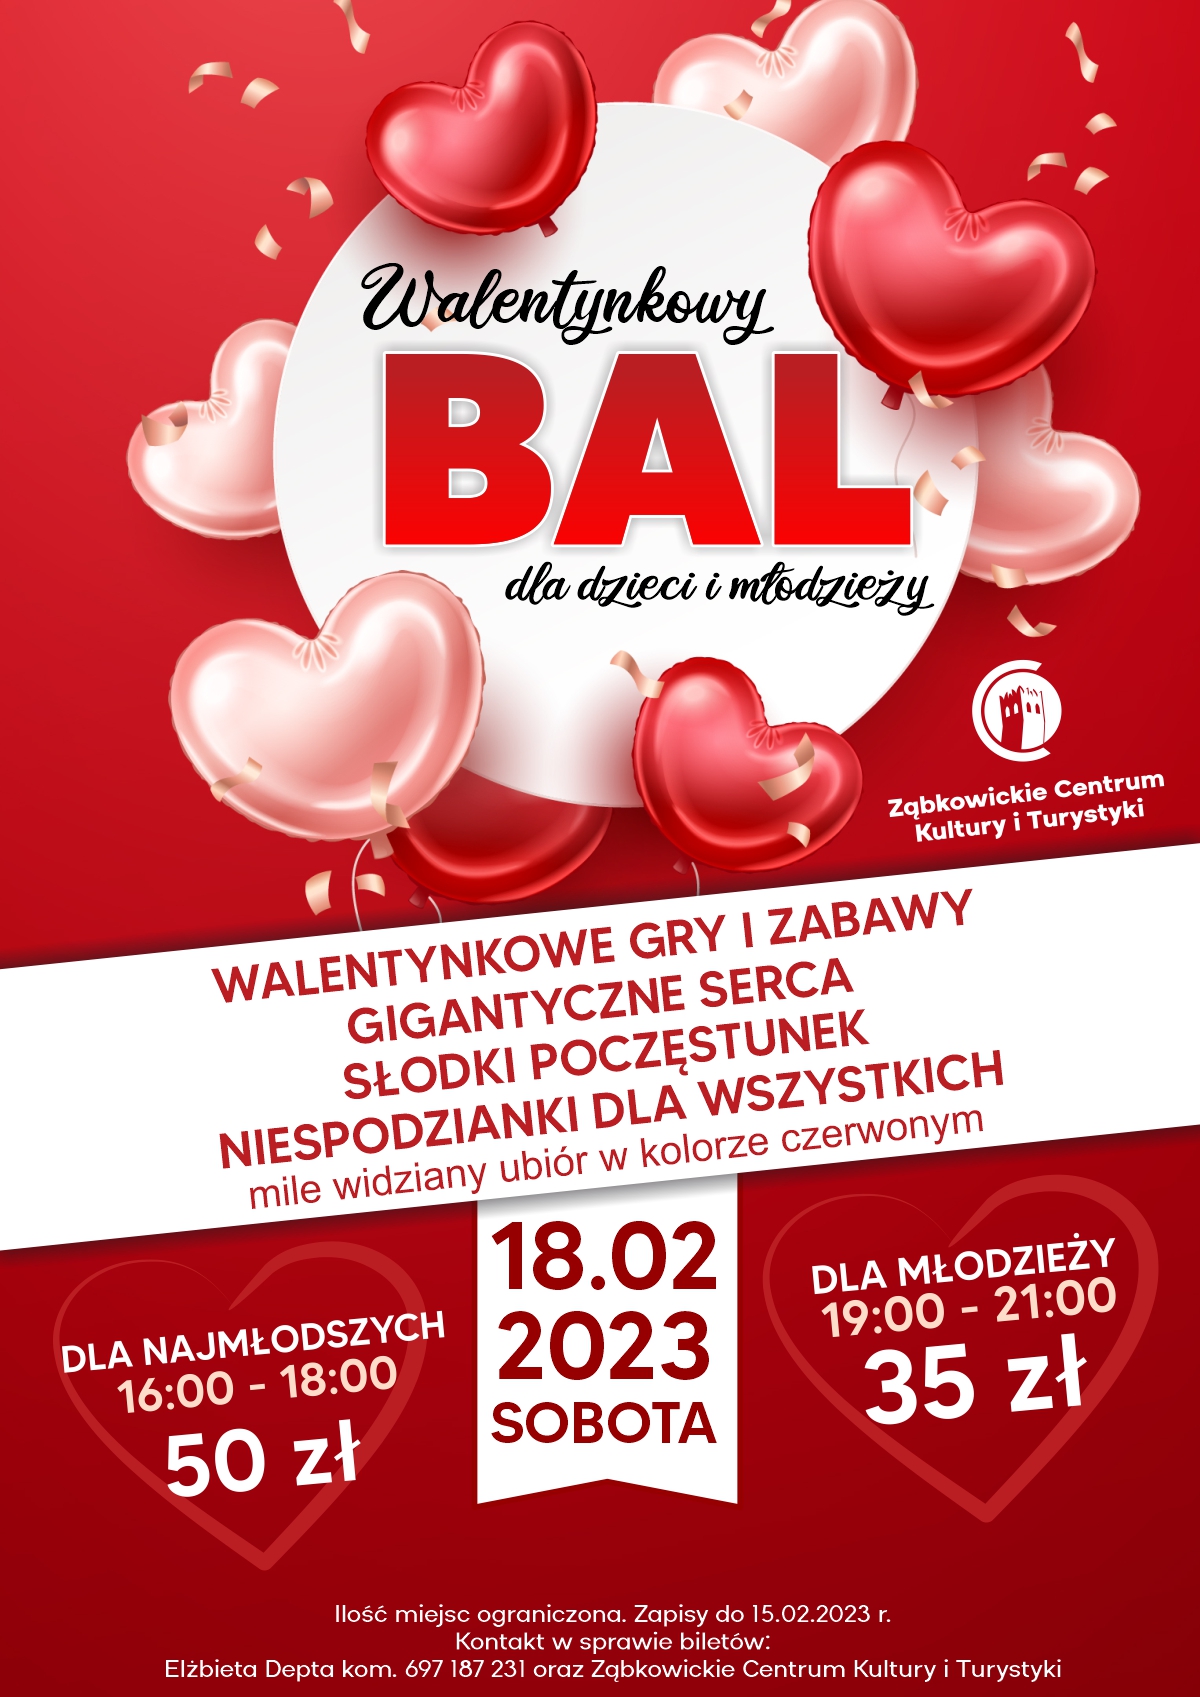 Plakat informujący o Walentynkowym Balu dla dzieci i młodzieży 18 lutego 2023 w ZCKiT.